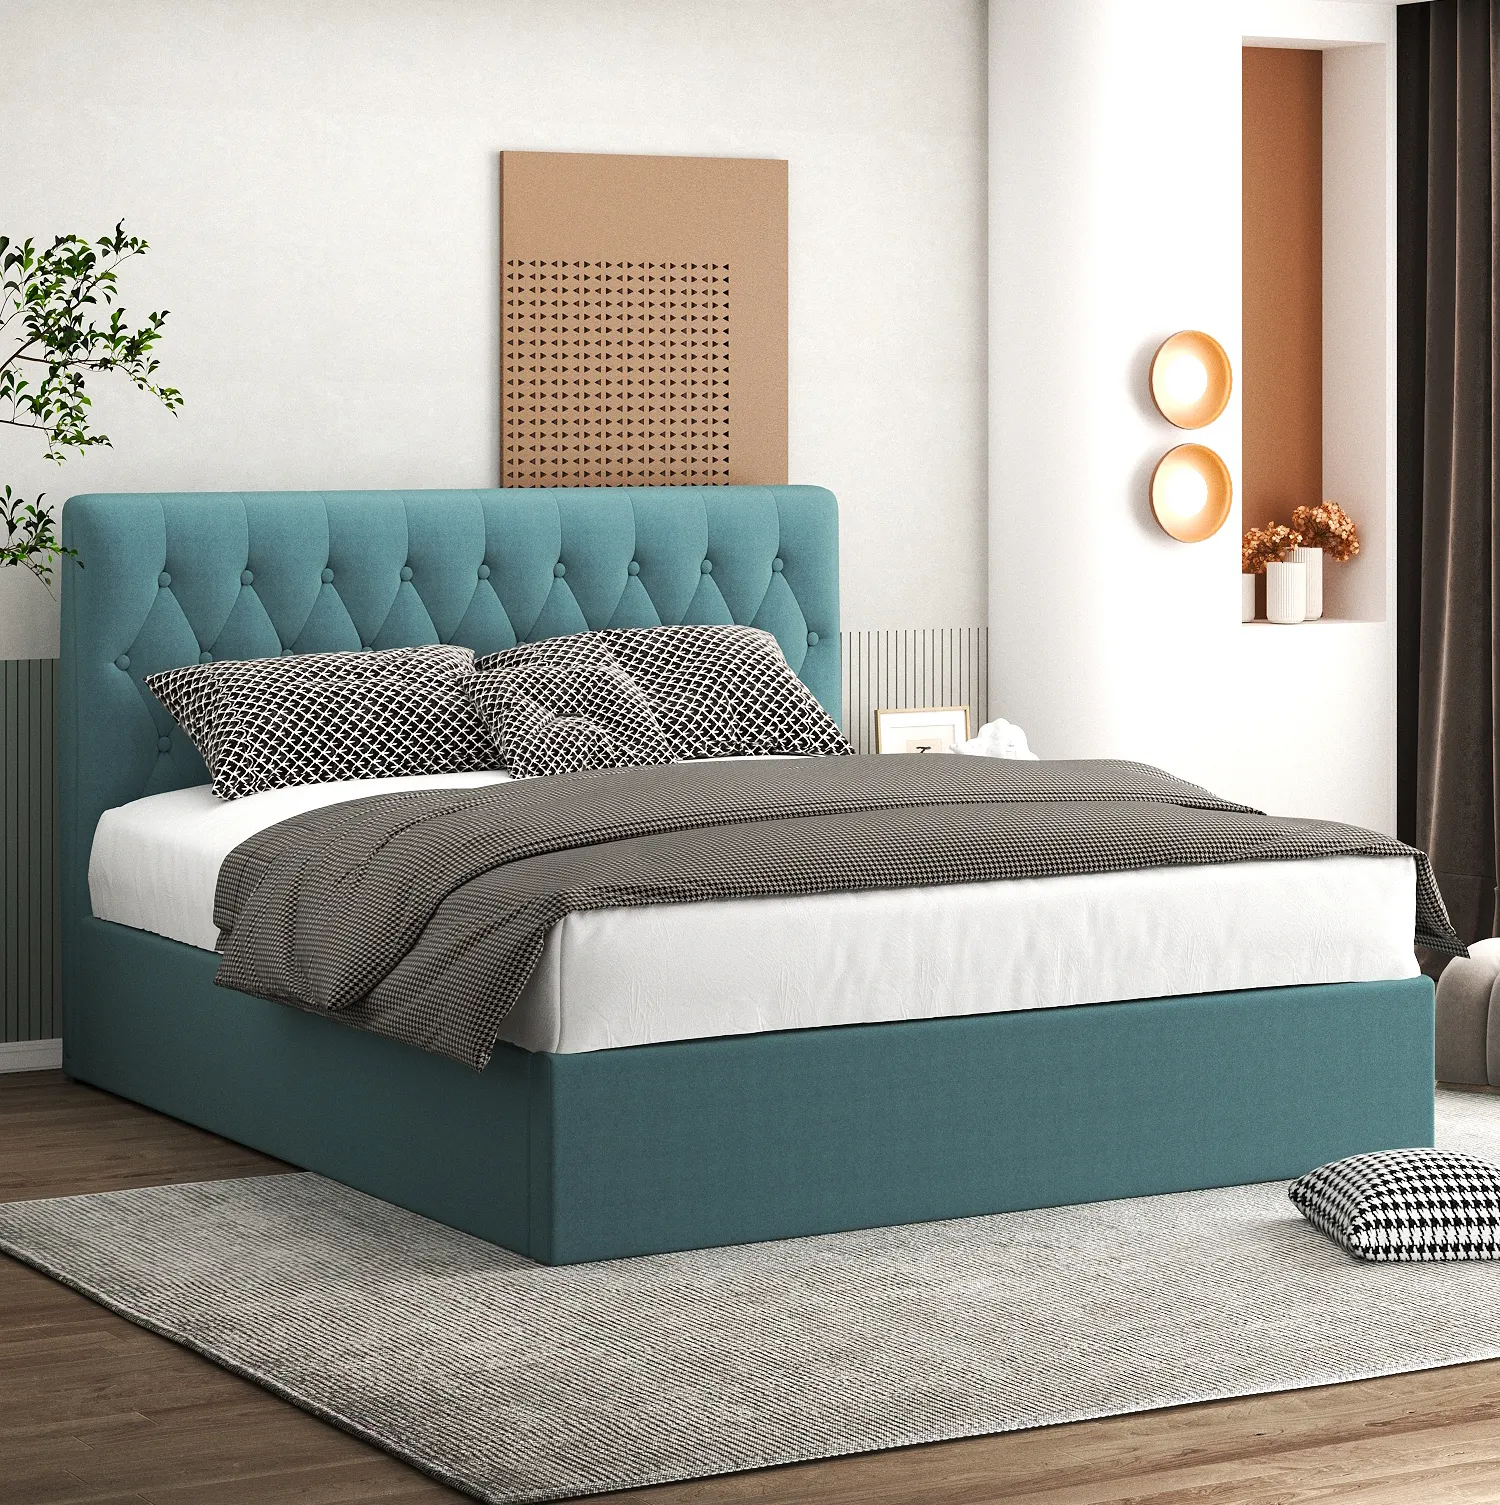 Кровати для хранения хорошего качества, тканевые пуговицы, дизайн, изголовье, подстилка, тканевая каркас для кровати, оптовая продажа